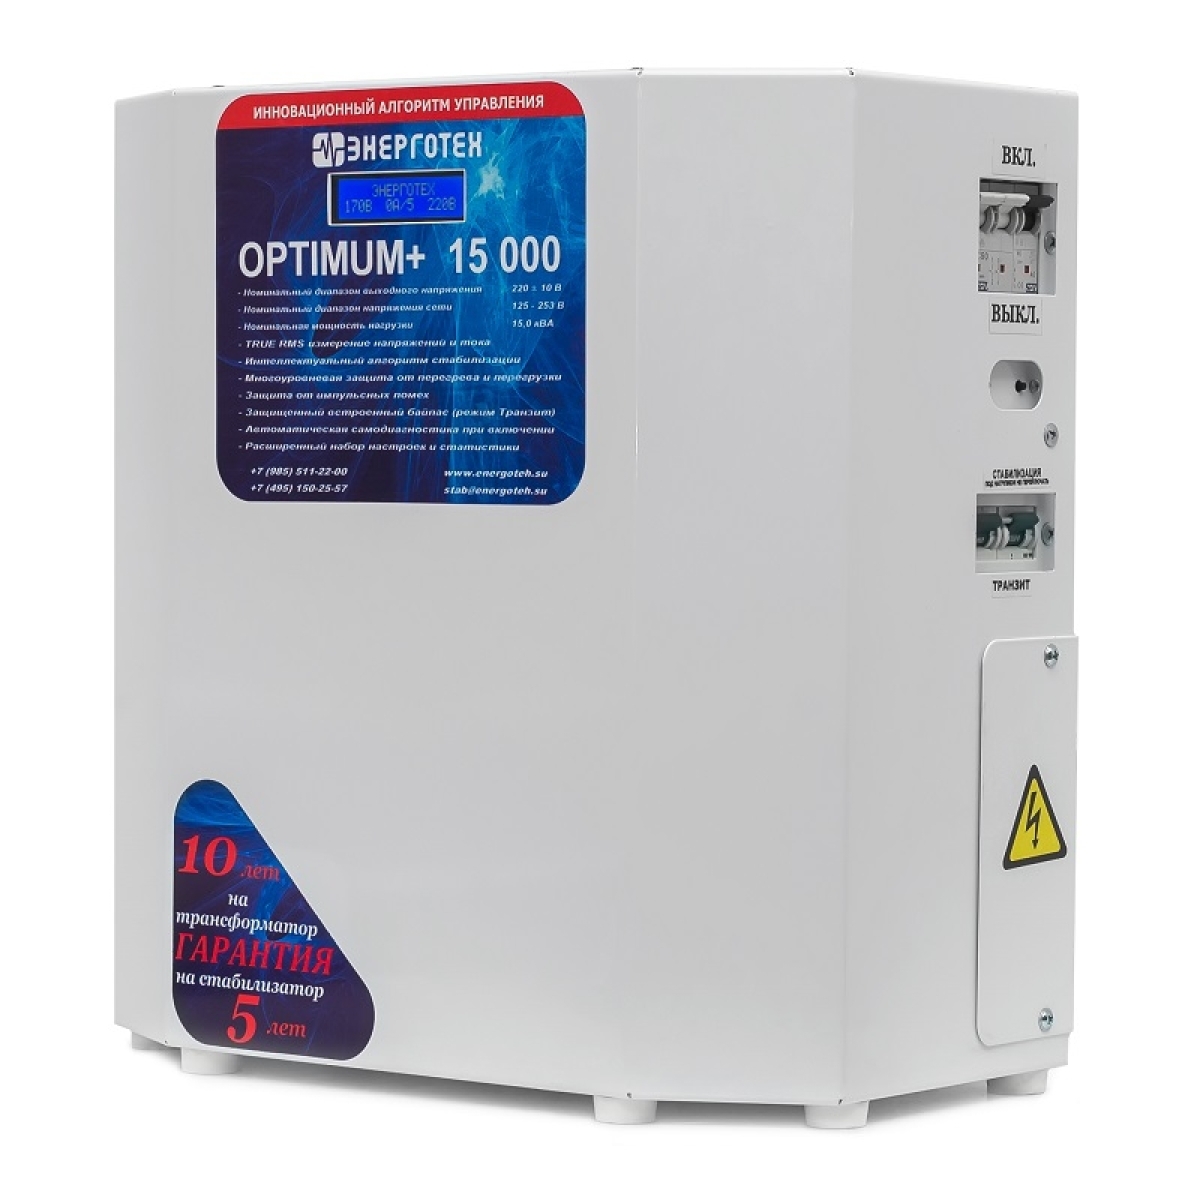 Однофазный стабилизатор Энерготех OPTIMUM+ 15000, вид справа